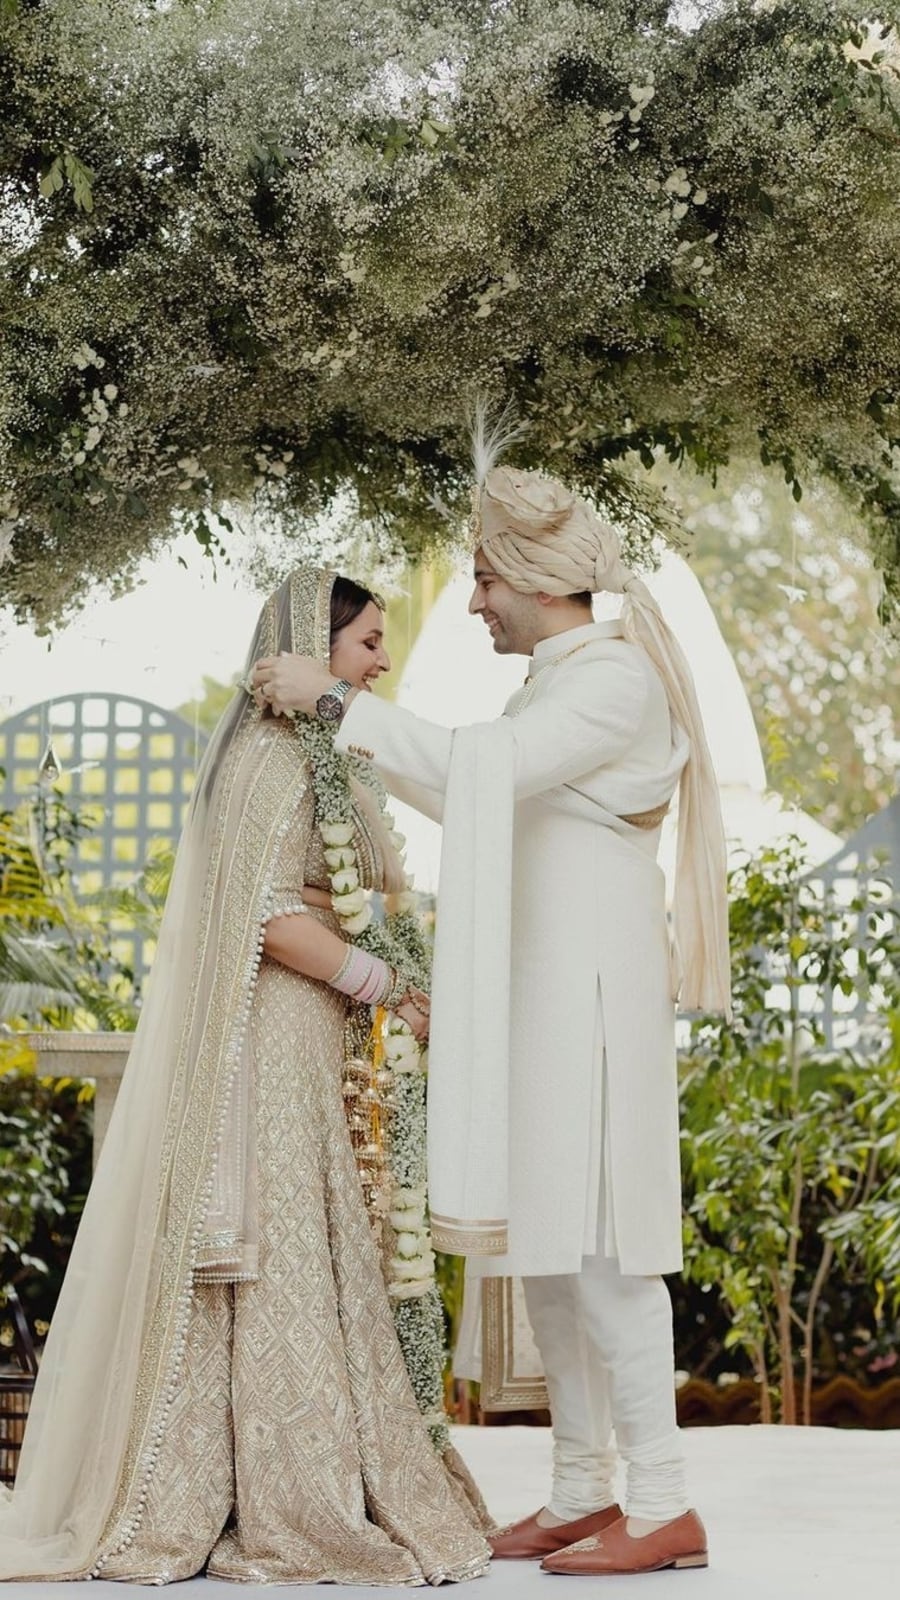 Fotos do casamento dos sonhos de Parineeti Chopra e Raghav Chadha